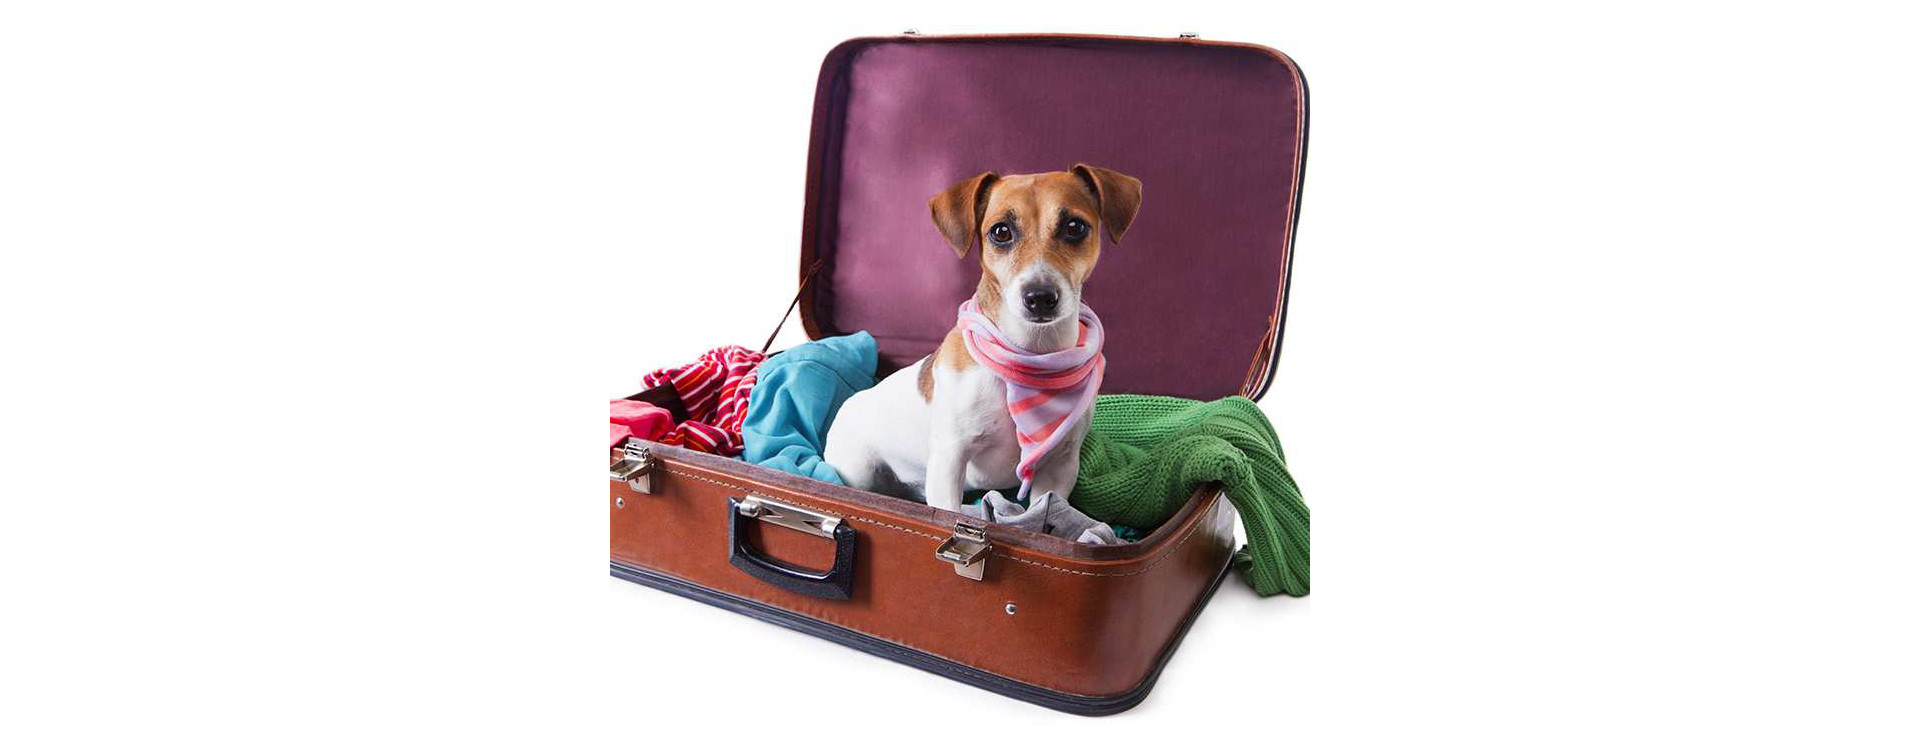 Indringing Productief Verplicht De hond mee op reis? een goed idee?